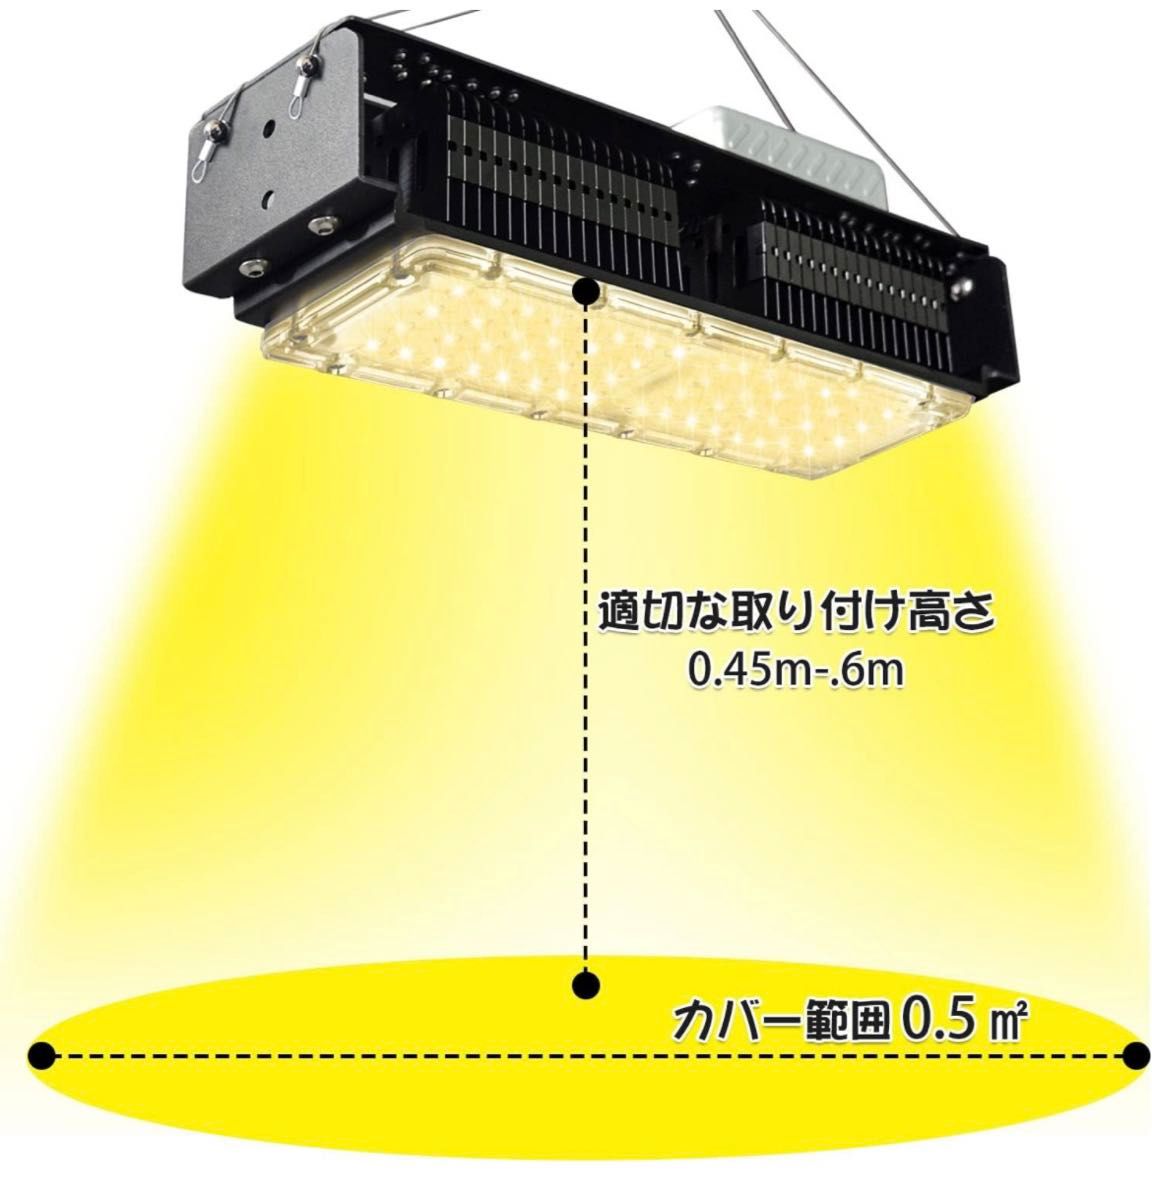 育成ライト LED  660nm 日照不足解消 500WHPS相当室内温室栽培